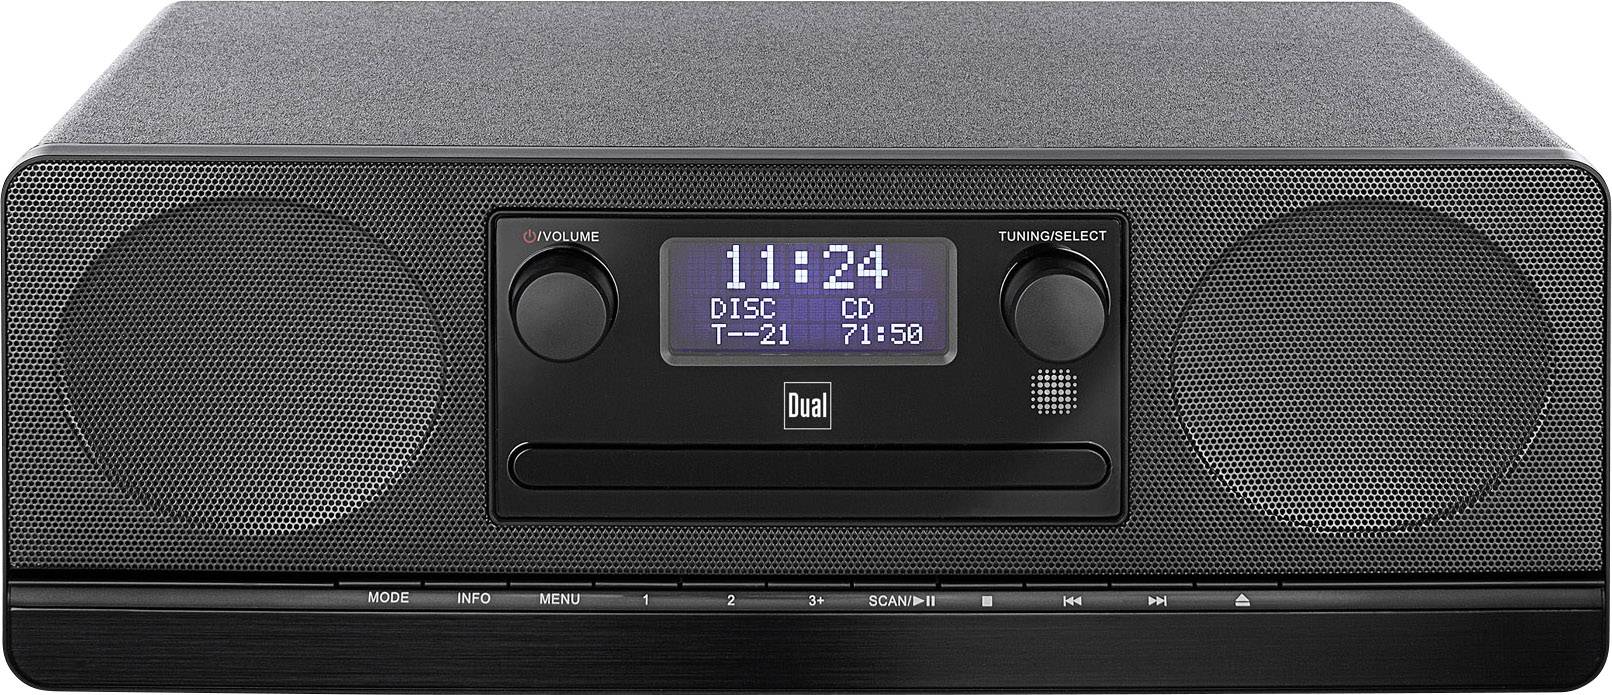 DAB 420 BT Radio CD player DAB+, FM AUX, Bluetooth, CD Black | Conrad.com